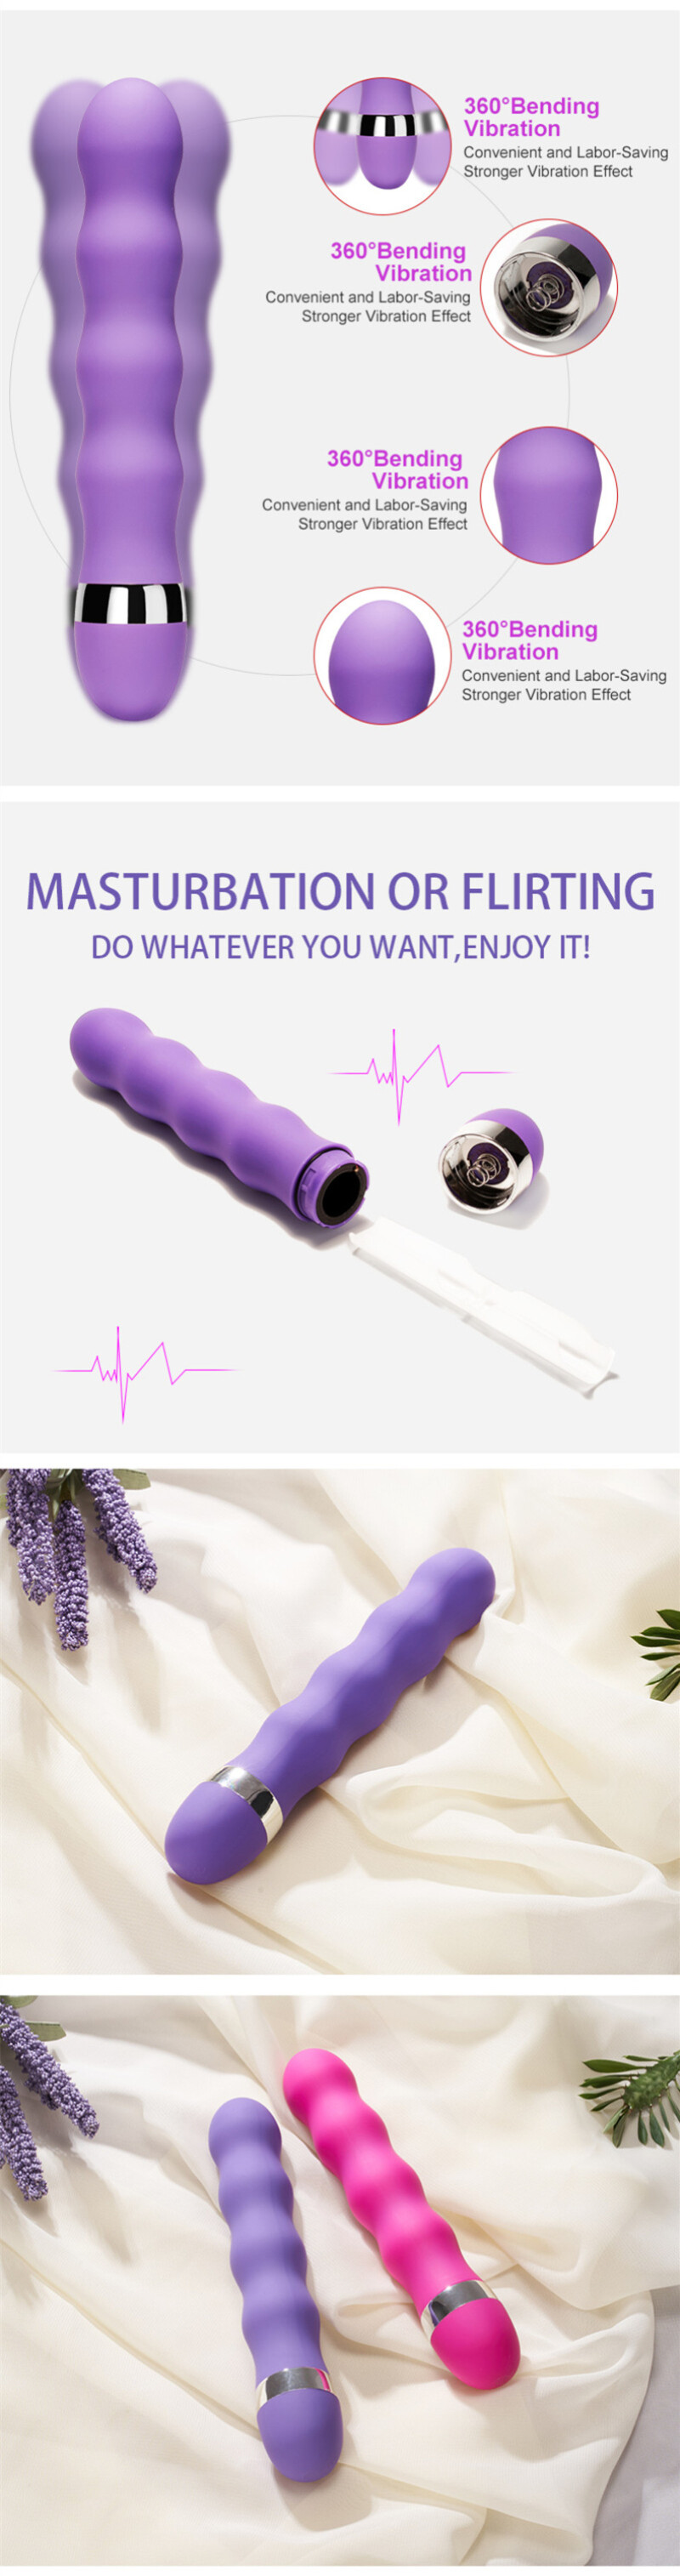 Houd Het Html-format Als Dat Mogelijk Is: Multi-speed G-spot Vagina Vibrator Clit Butt Plug Anal Porn Sex Masturbation Toy